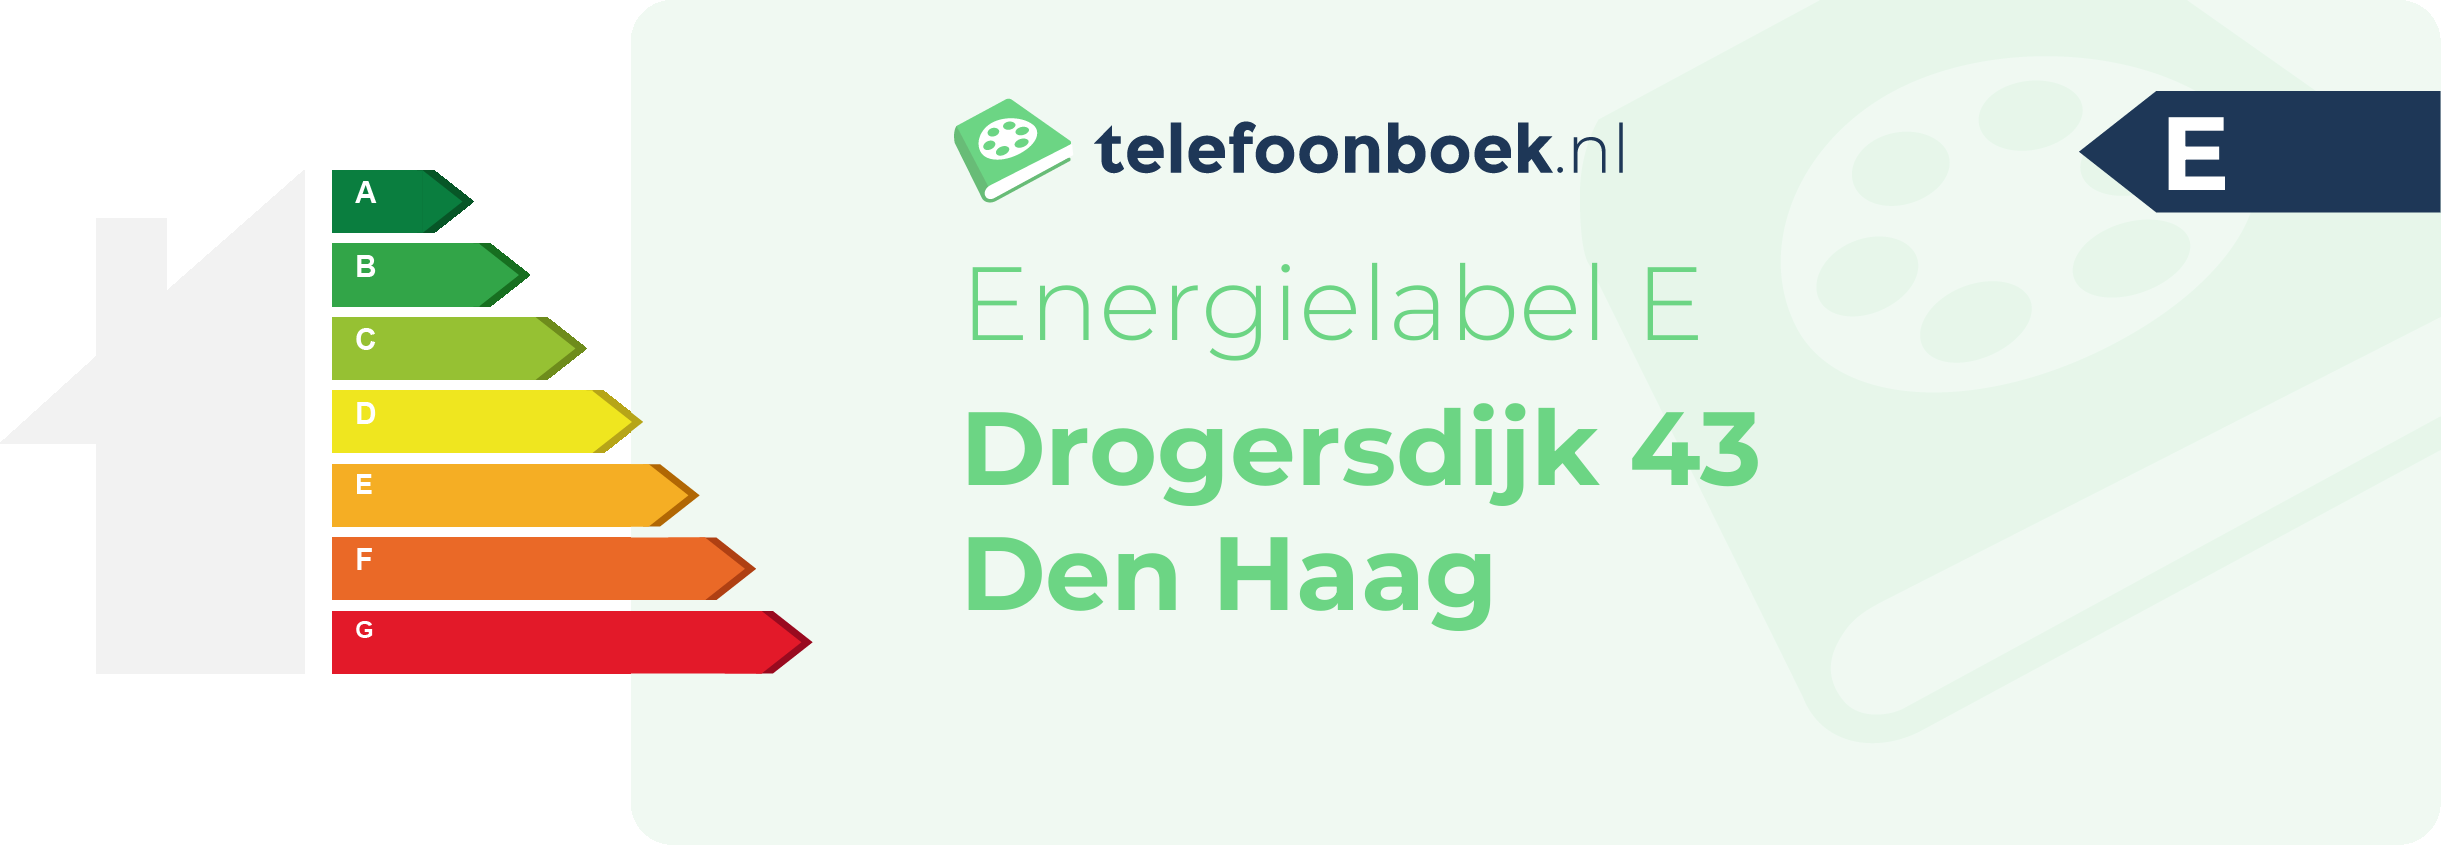 Energielabel Drogersdijk 43 Den Haag